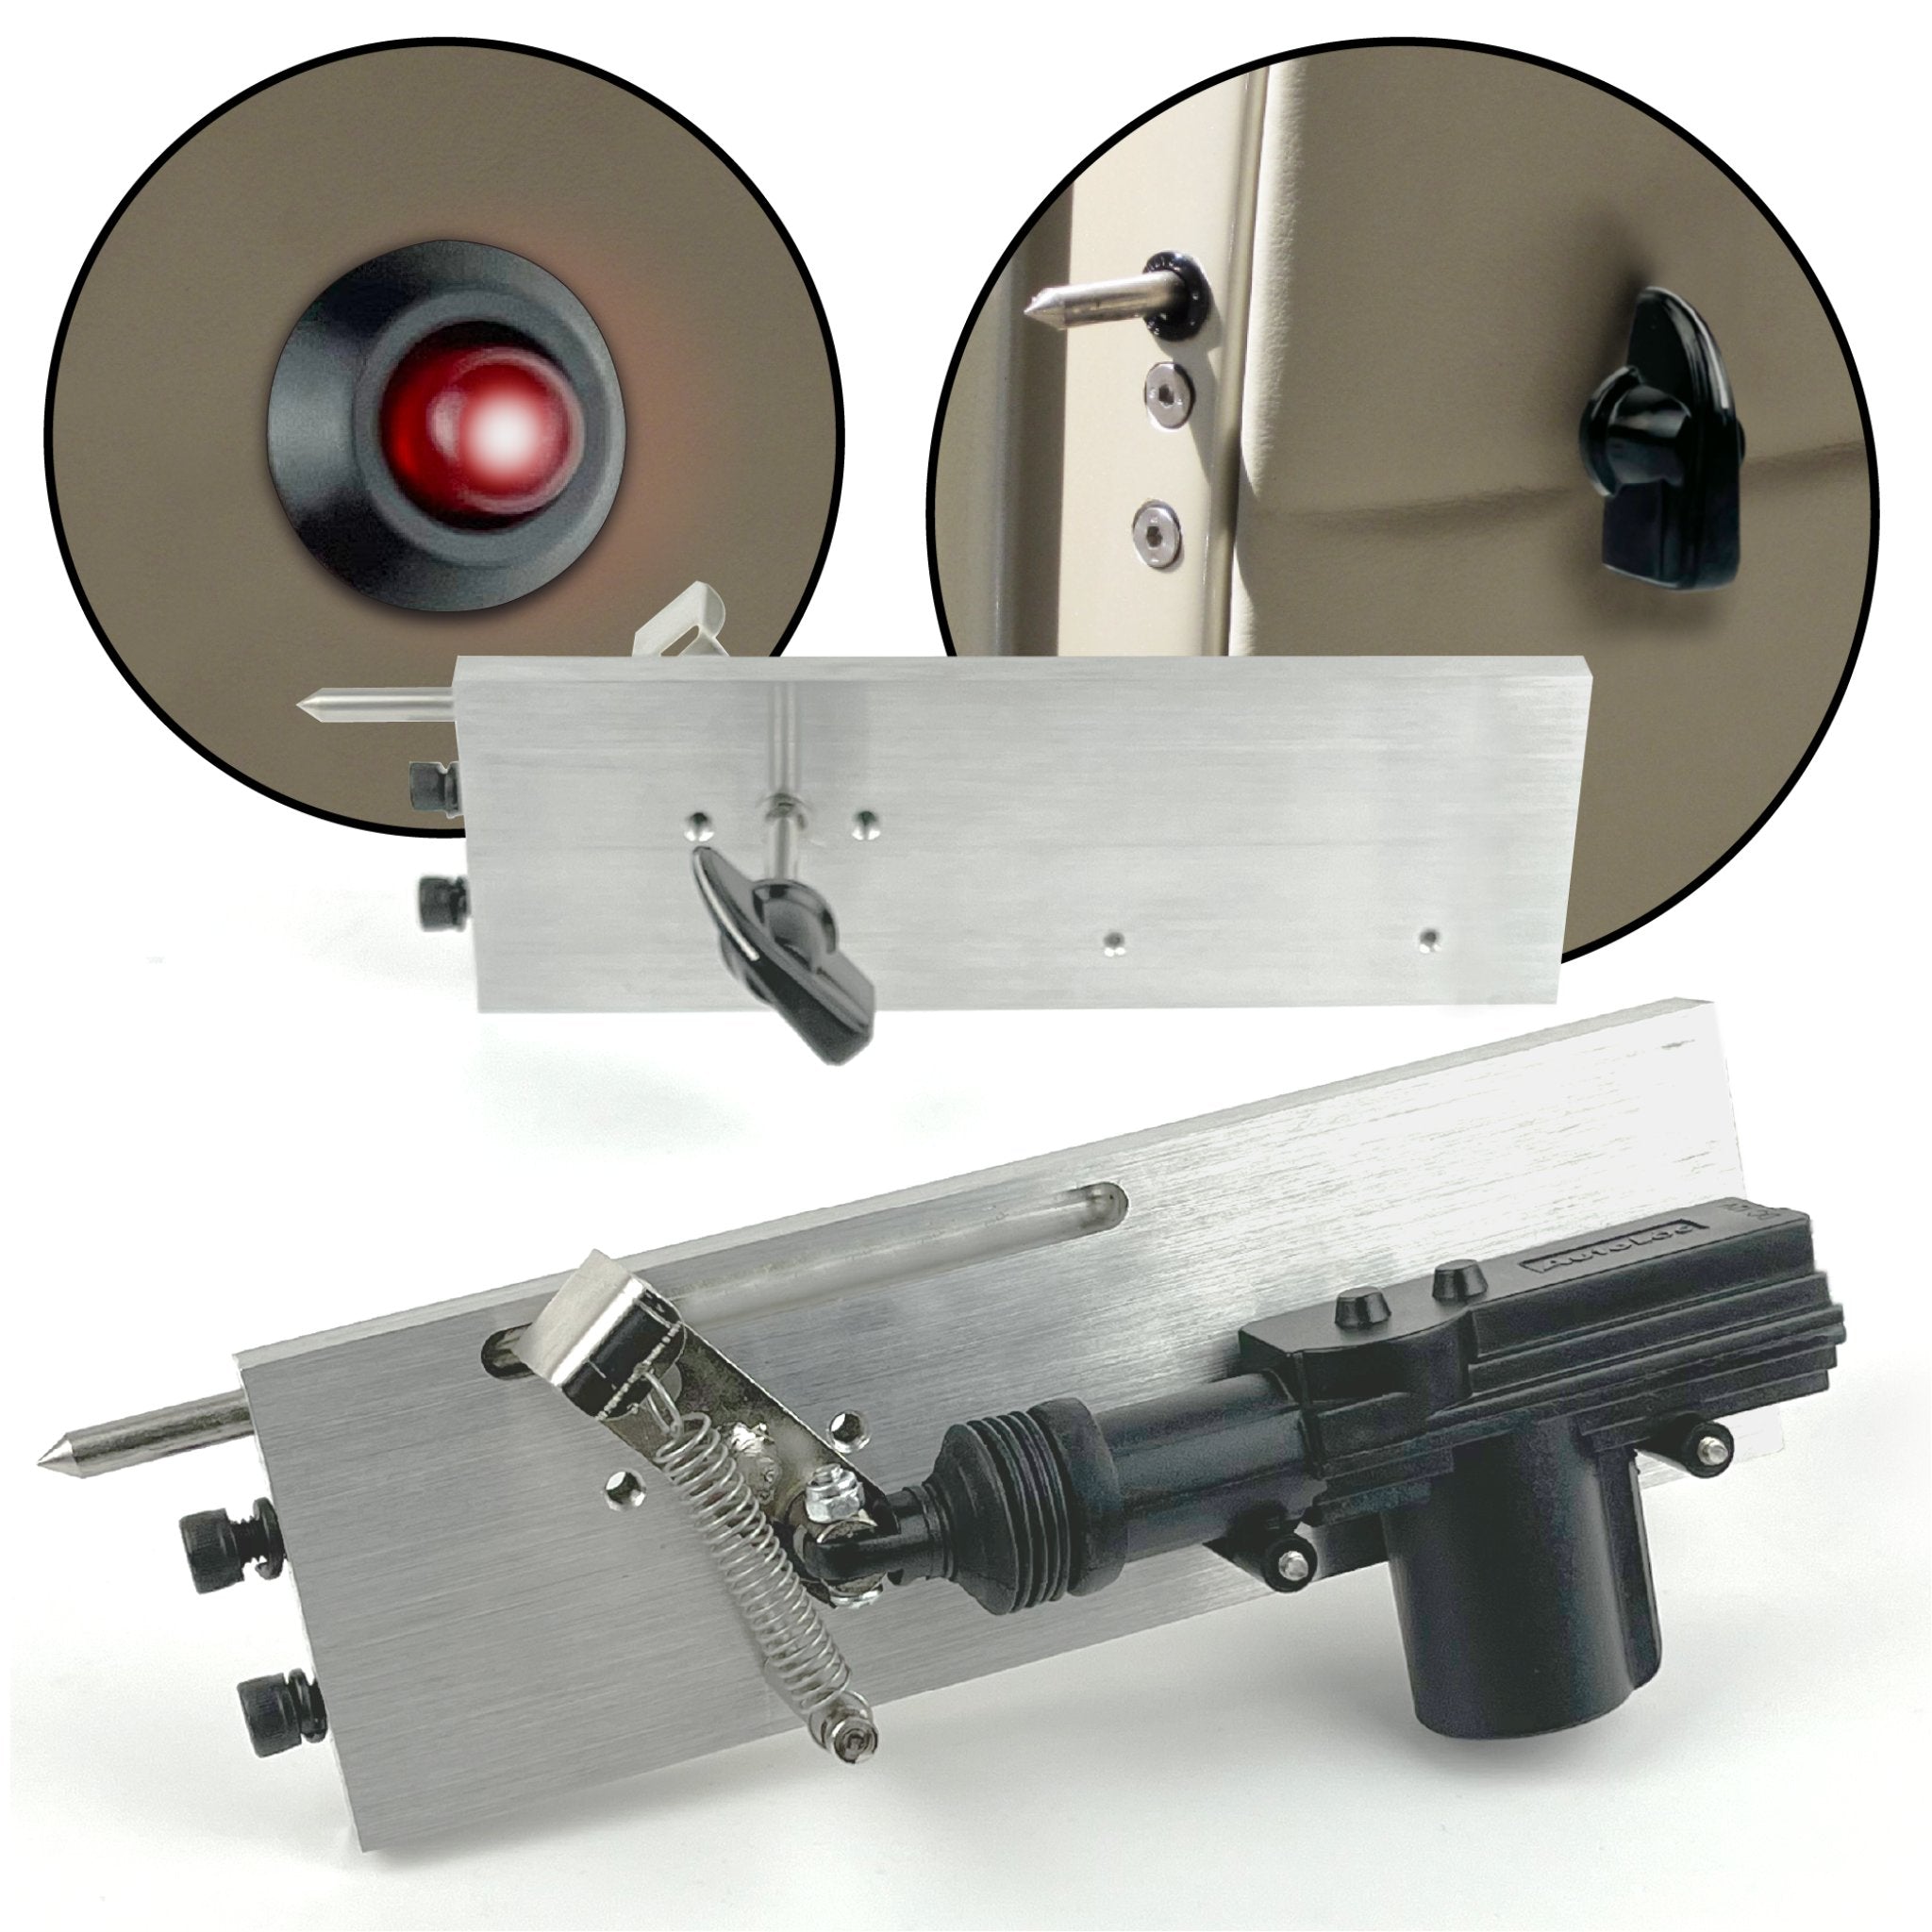 Kit de sistema de bloqueo muerto con pasador de seguridad para puerta suicida con alimentación de 12V con luz indicadora